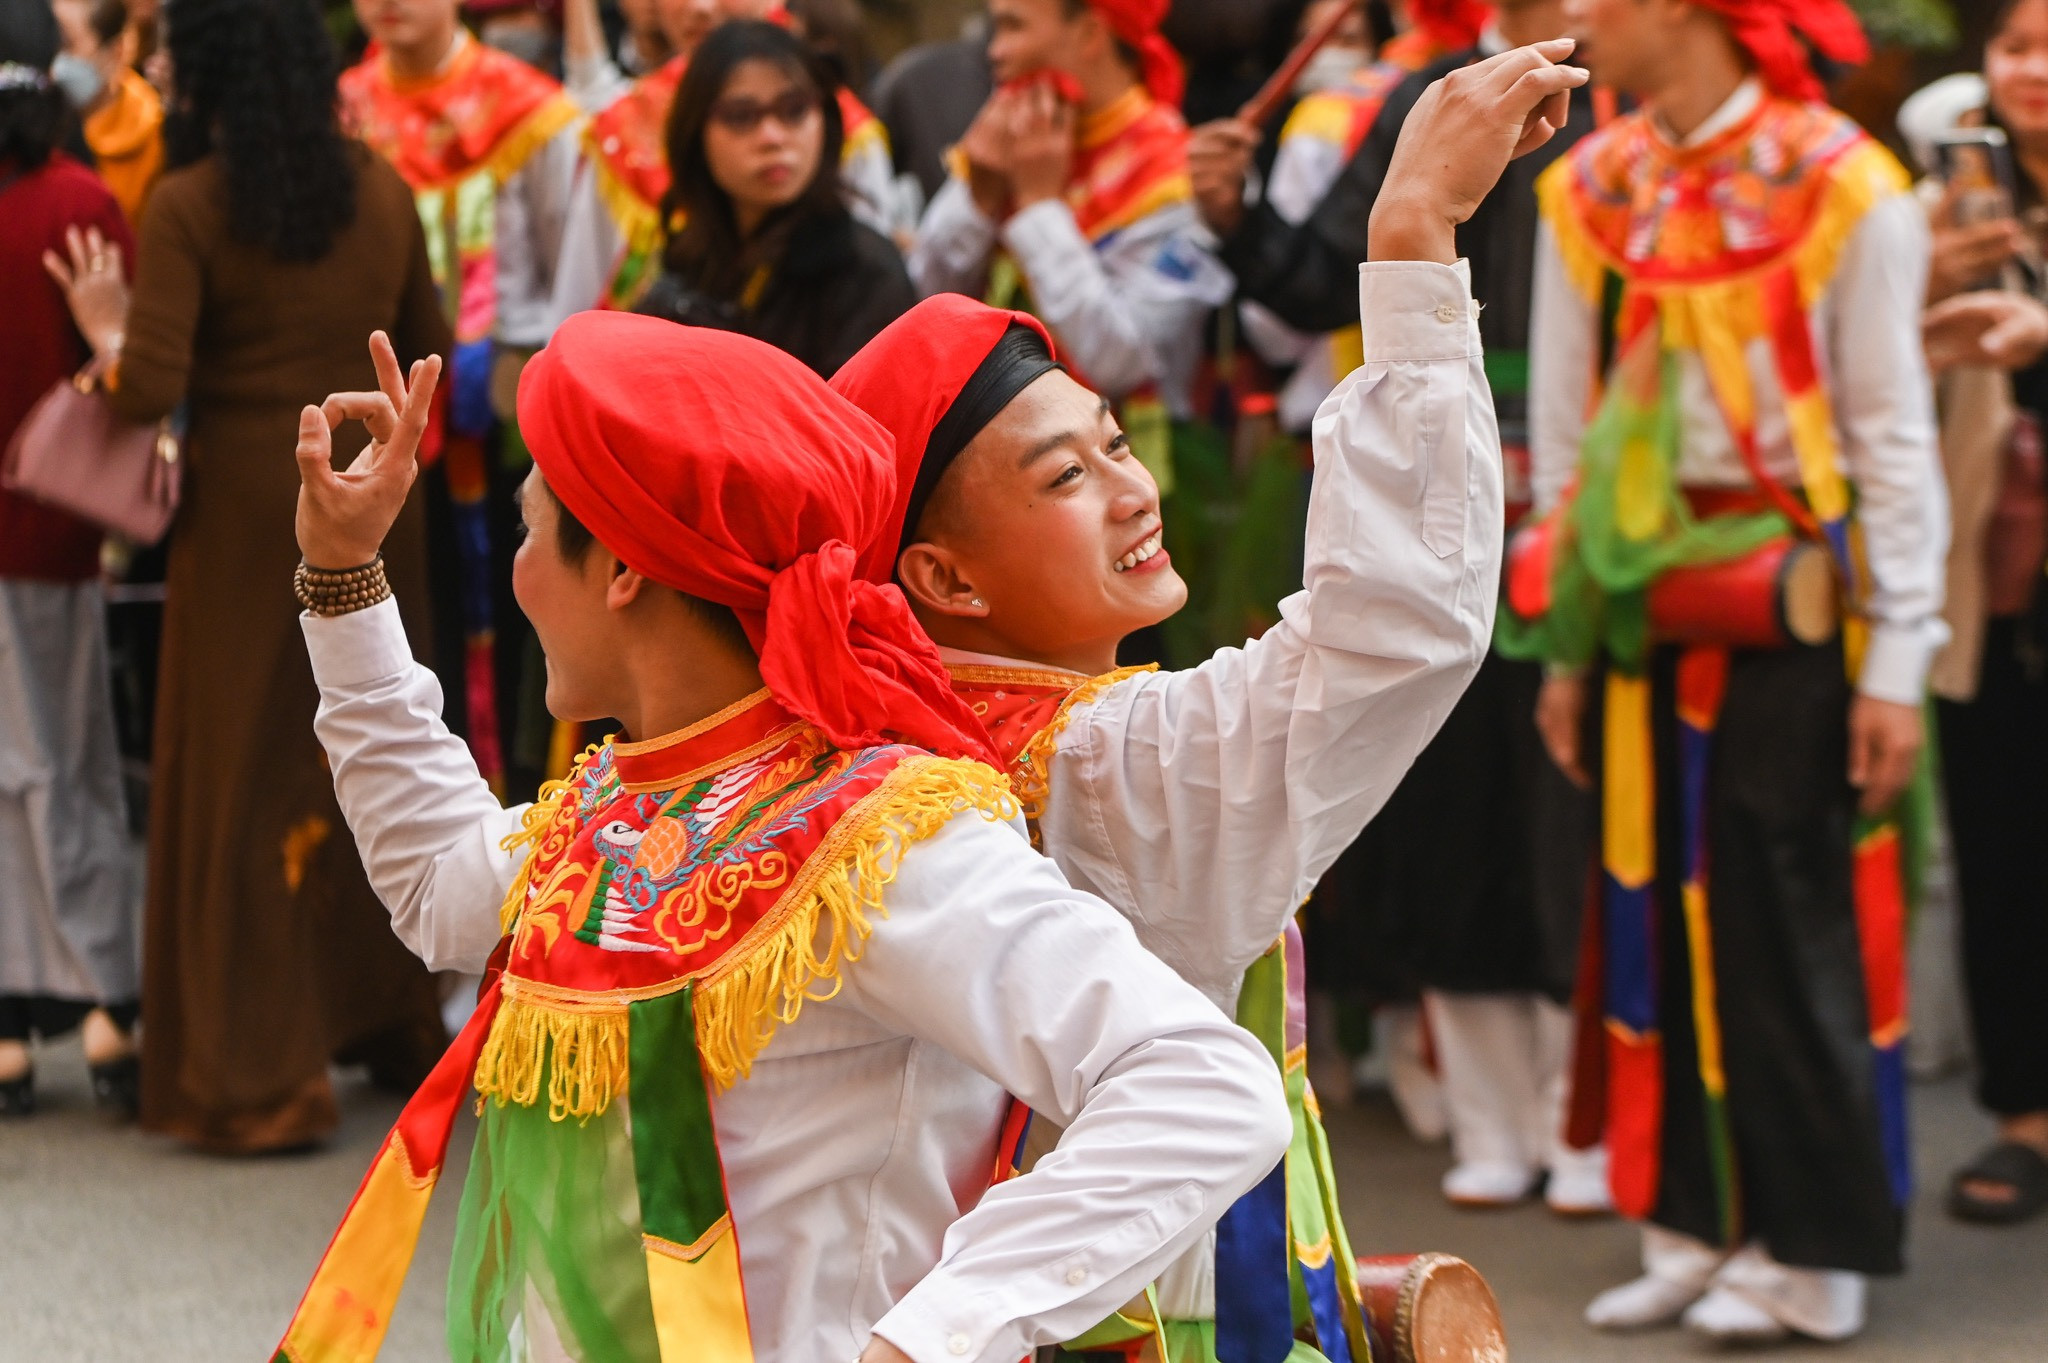 Trai giả gái múa điệu đánh bồng tại hội làng ở Hà Nội